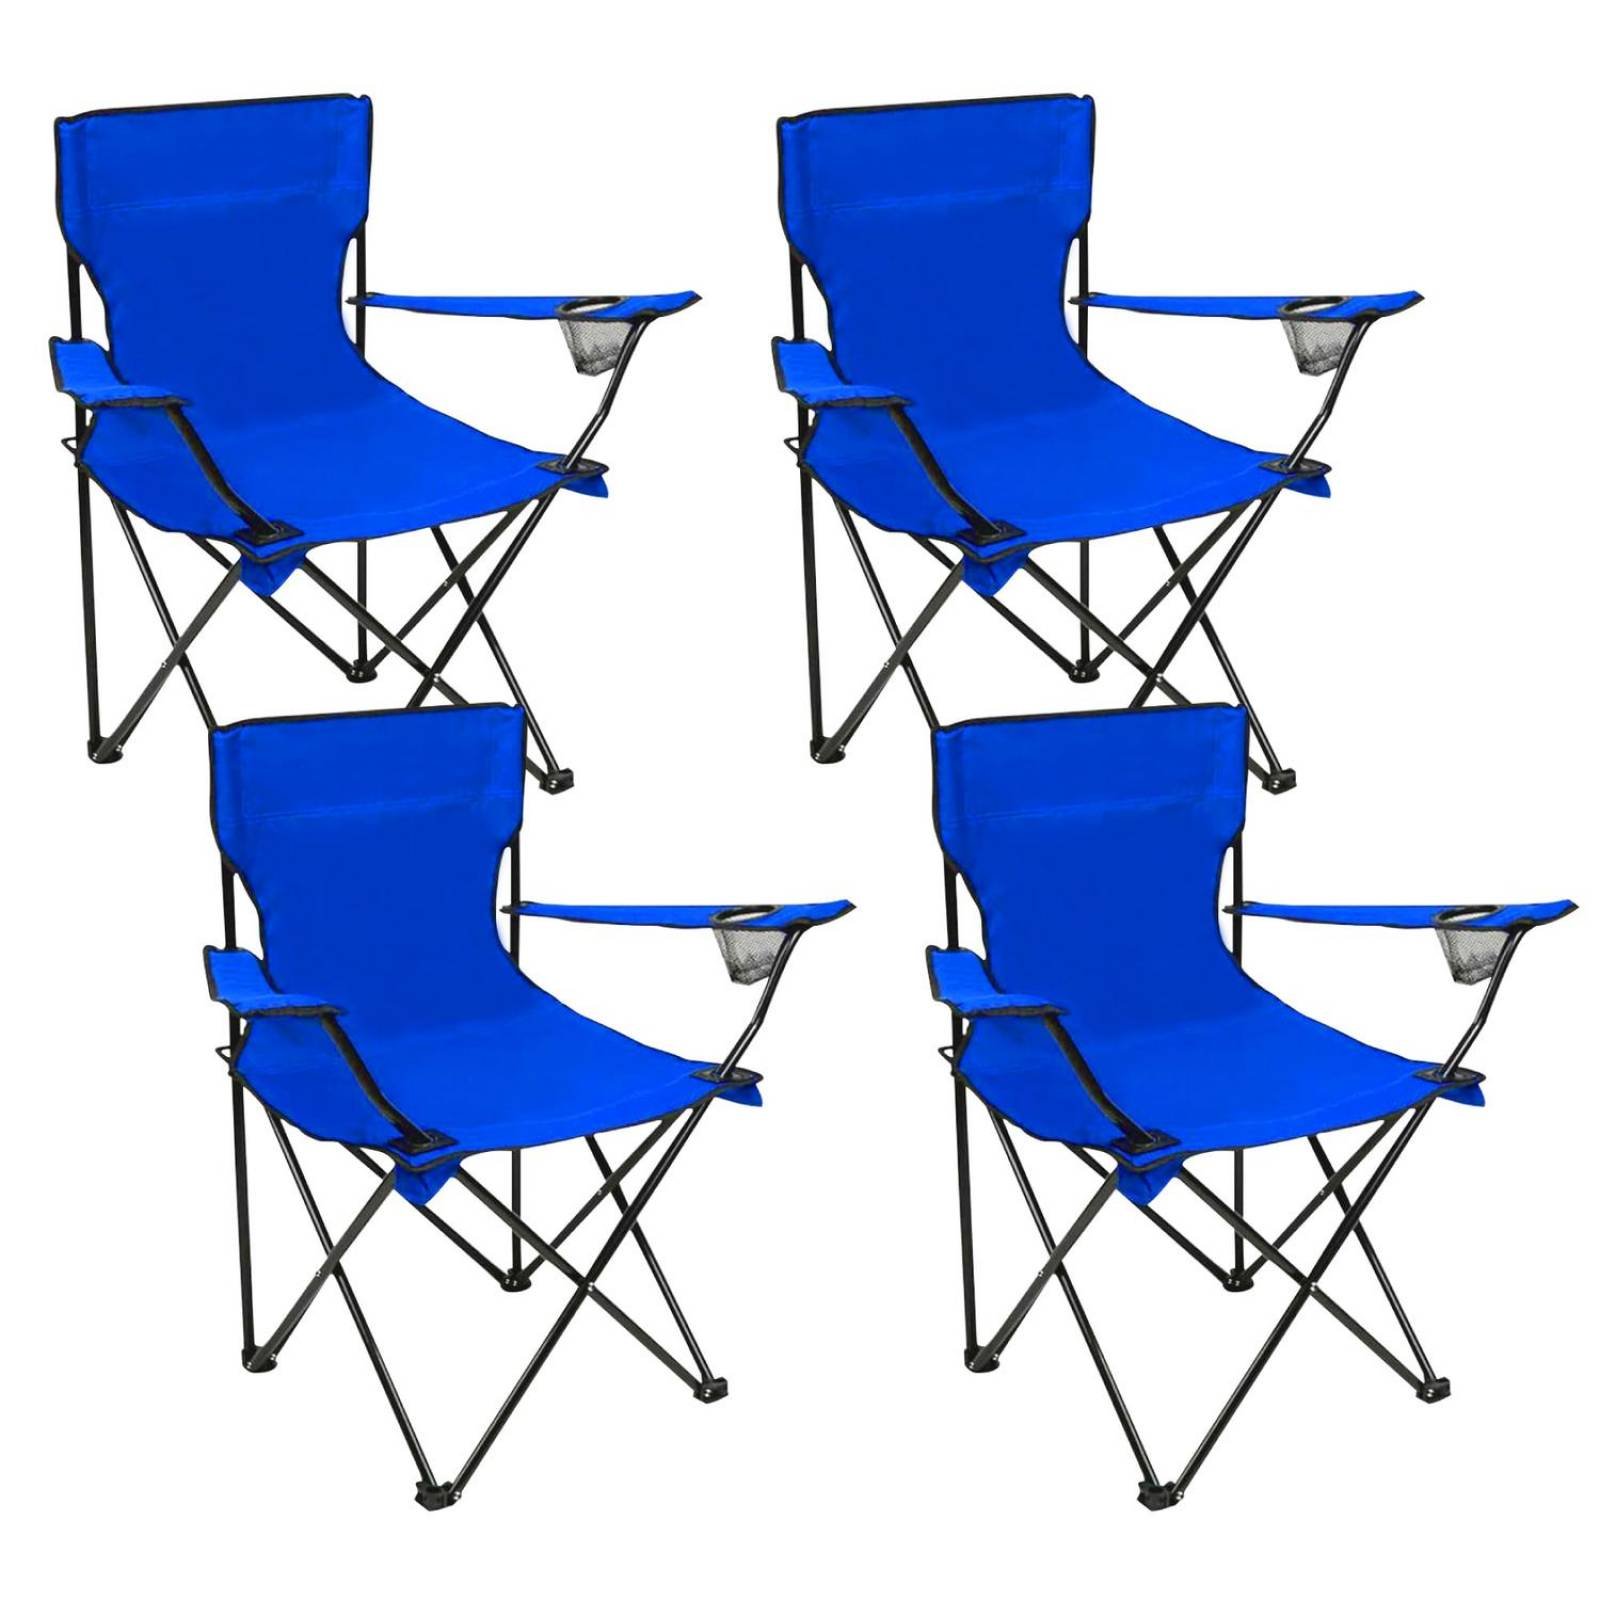  Livebest Sillas de camping portátiles, sillas de playa  plegables para adultos, con toldo de sombra y portavasos, bolsa de  transporte incluida, soporta hasta 220 libras, sillas plegables para uso al  aire